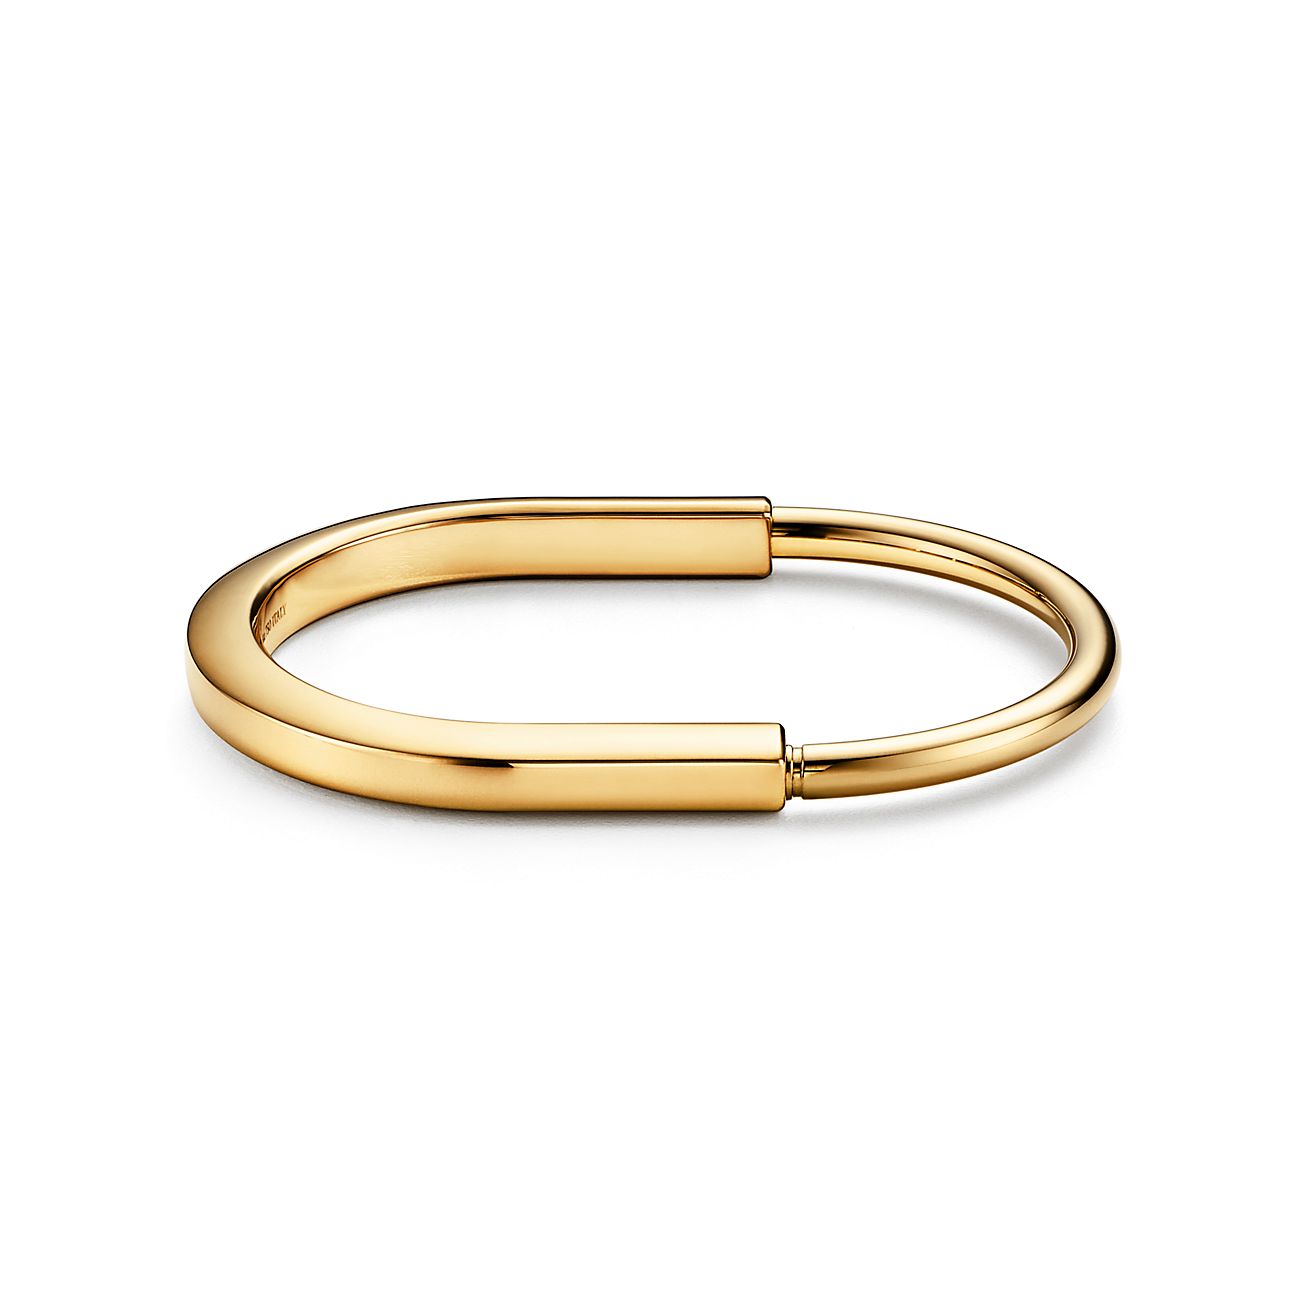 CRB6048617 - Juste un Clou bracelet - Yellow gold, diamonds - Cartier